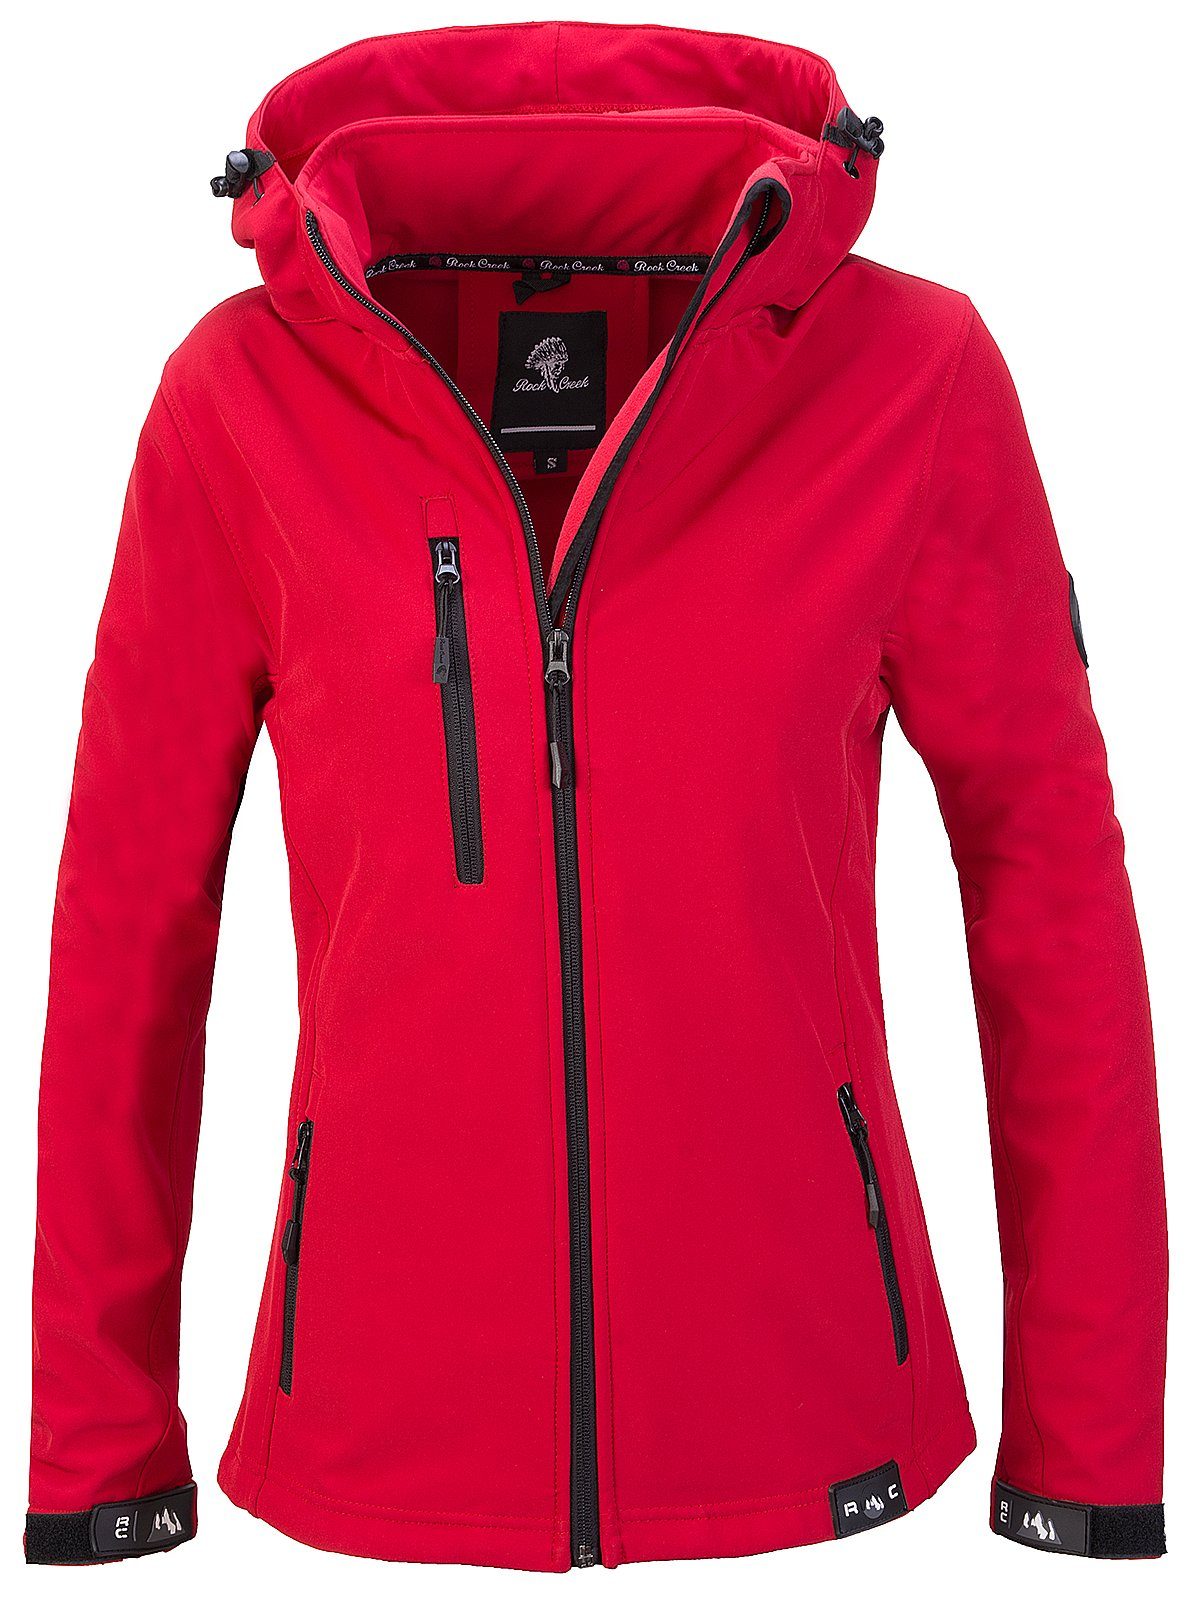 Günstige Jacken für Damen online kaufen » Jacken SALE | OTTO